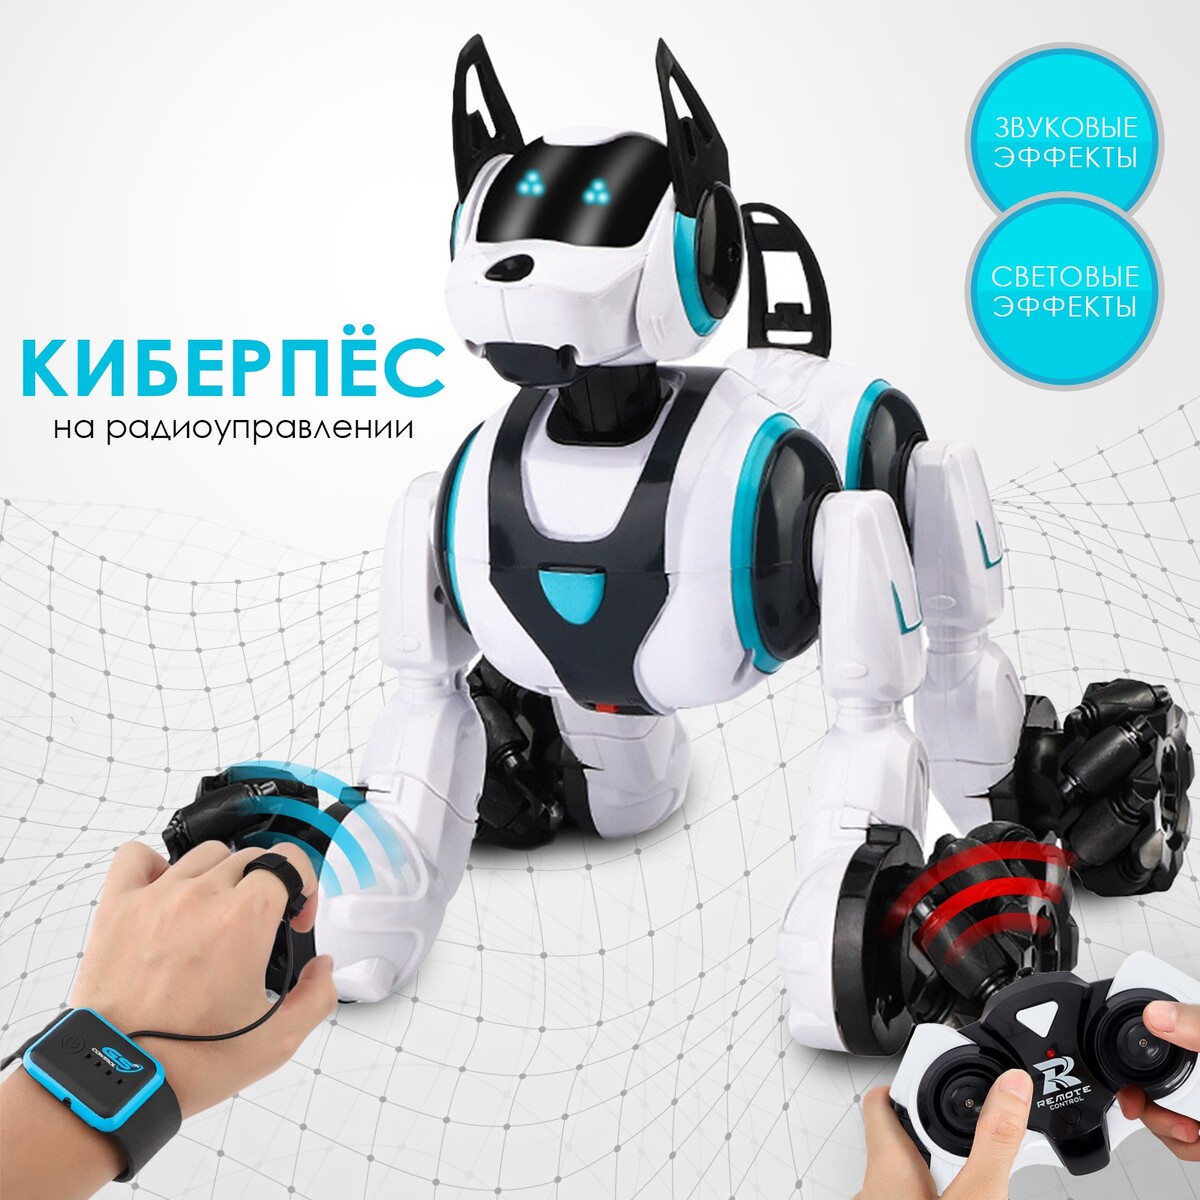 Робот собака stunt, на пульте управления, интерактивный: звук, свет, на аккумуляторе, белый боевые роботы на пульте управления робокомбат ycoo